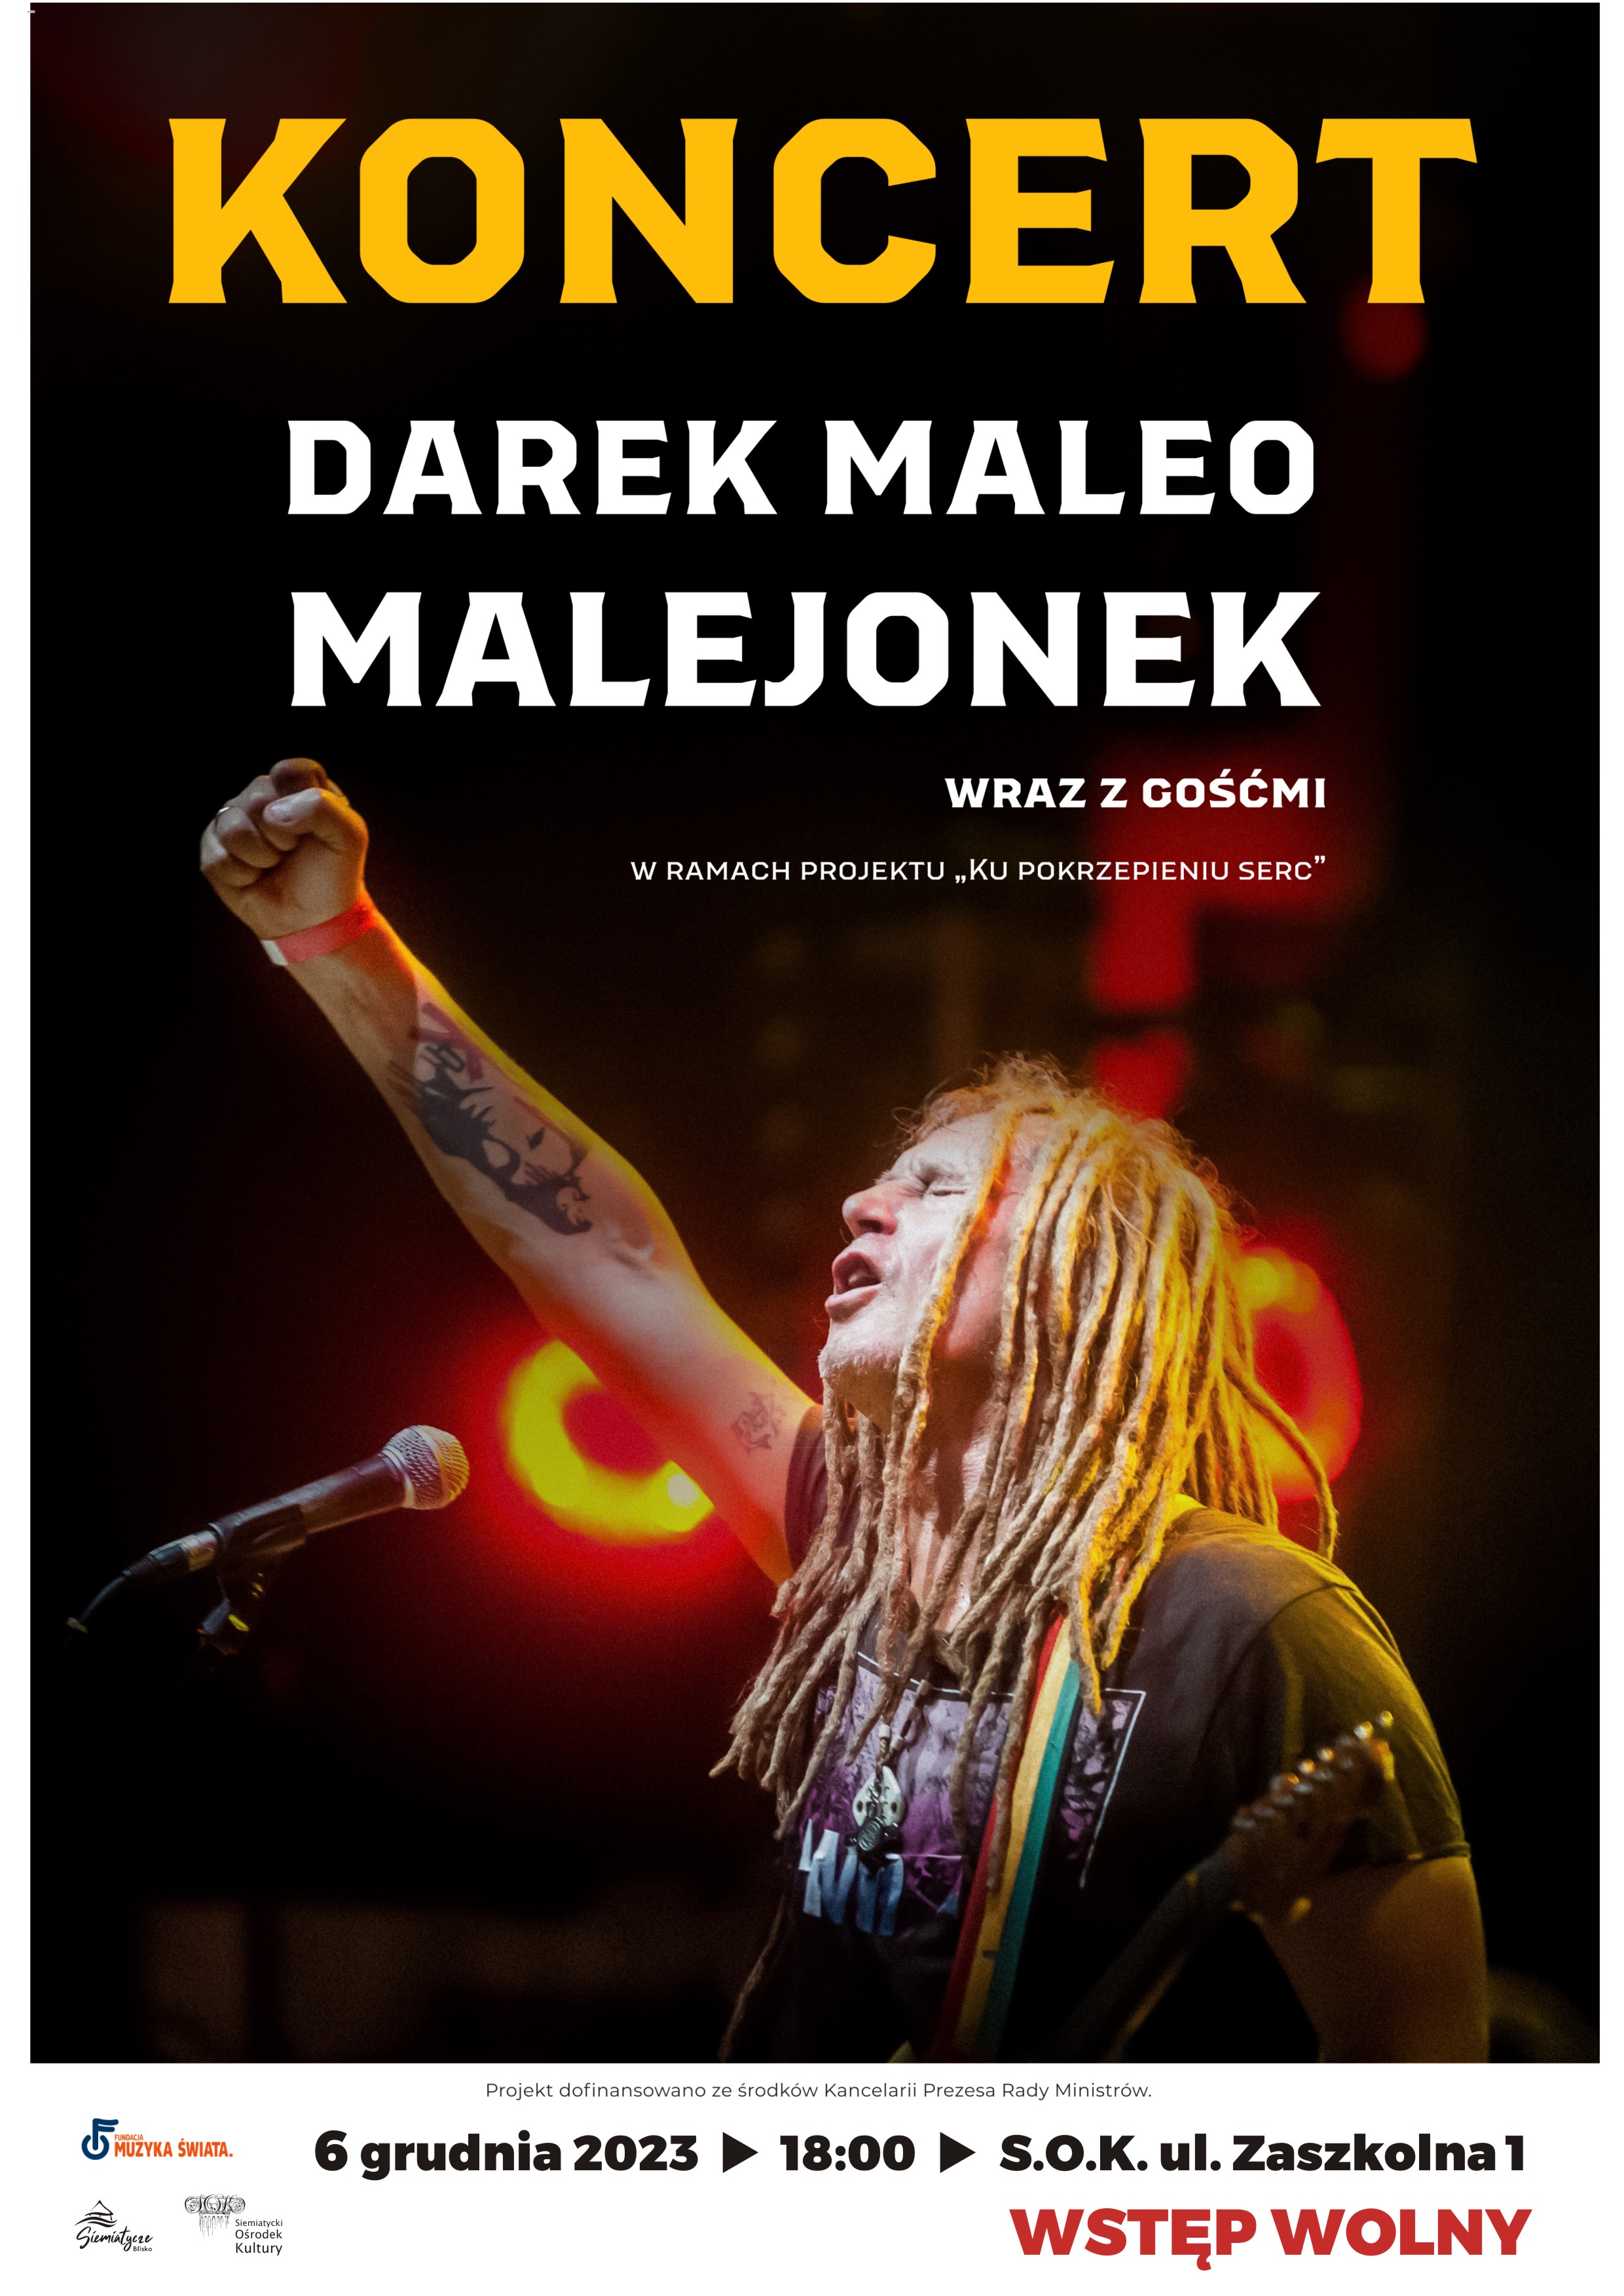 Grafika promująca koncert Darek Maleo Malejonek wraz z gośćmi.